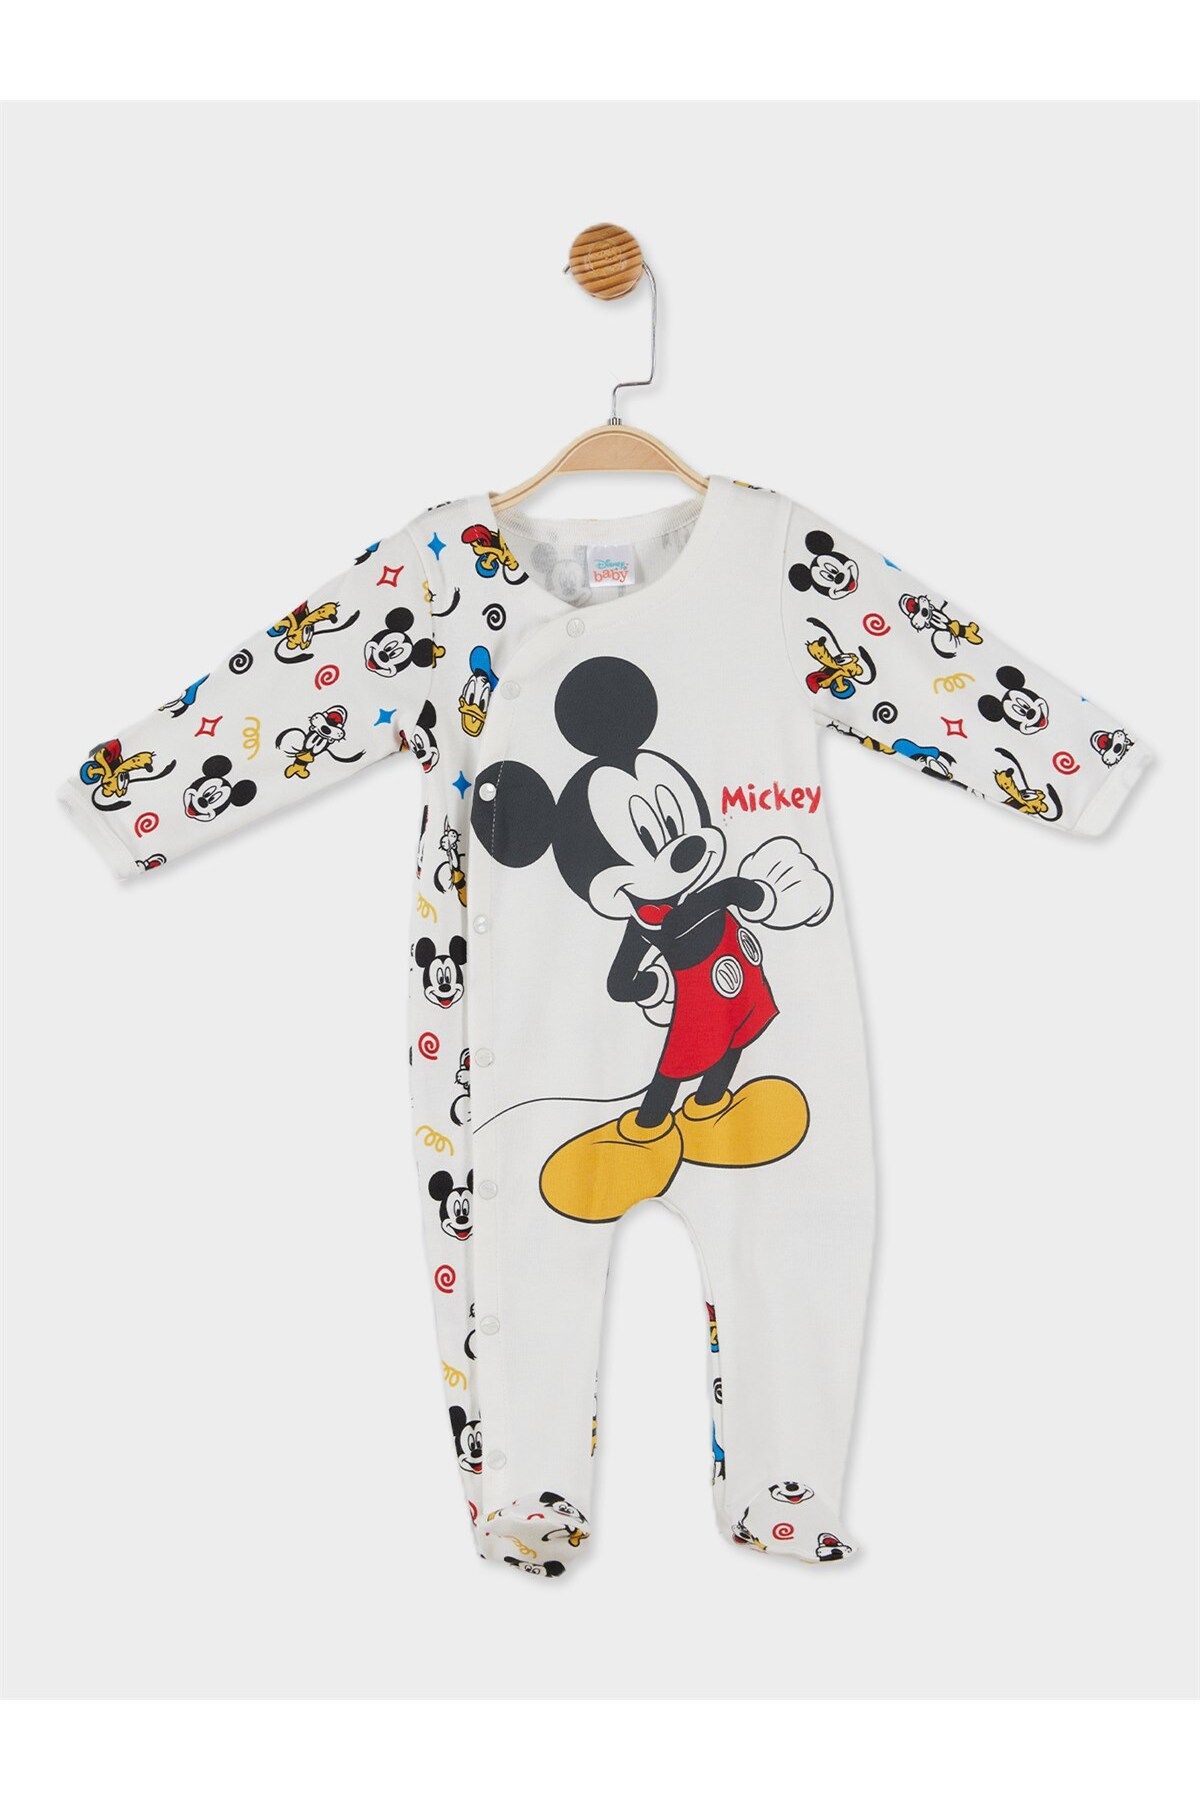 Mickey Mouse Disney Lisanslı Erkek Bebek Uzun Kol Patikli Tulum 20839